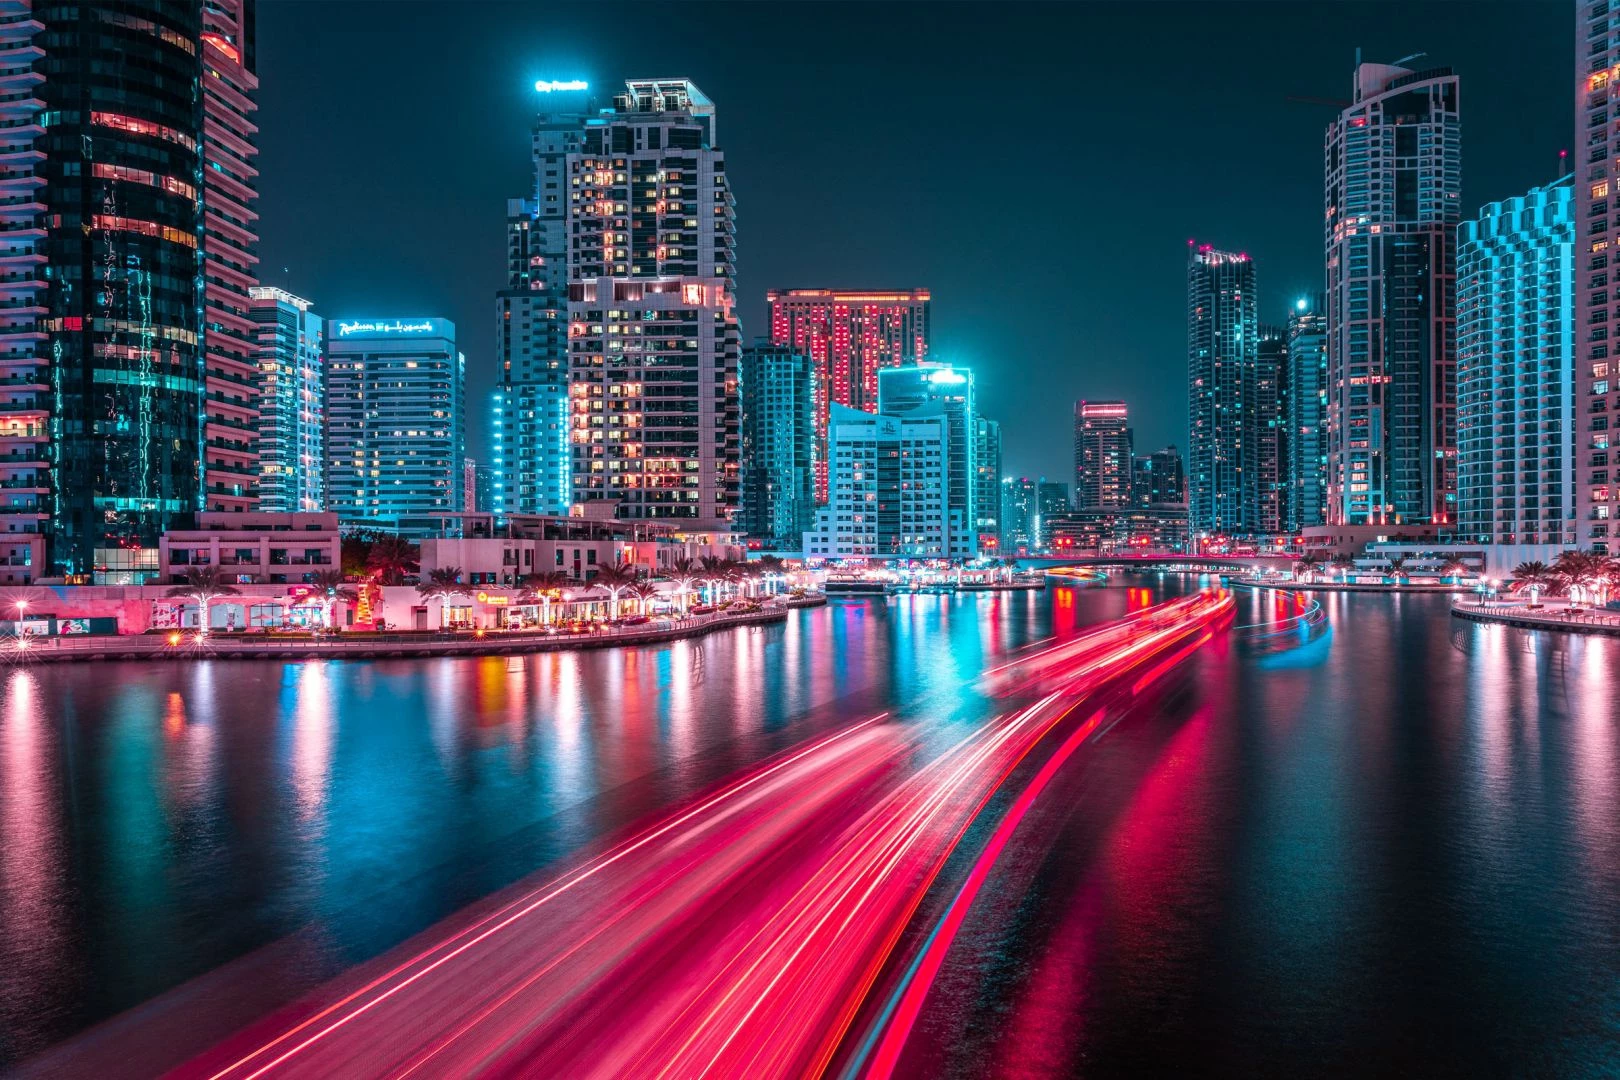 Sau khi tìm được cách tái hiện cảm xúc chân thực nhất qua những bức ảnh, Portela đã thực hiện series "Glow" ở một số thành phố lớn như New York (Mỹ), Bangkok (Thái Lan). Thành phố mới nhất xuất hiện trong series này là Dubai. Portela đến đây vào năm 2019 khi tham dự lễ hội nhiếp ảnh.